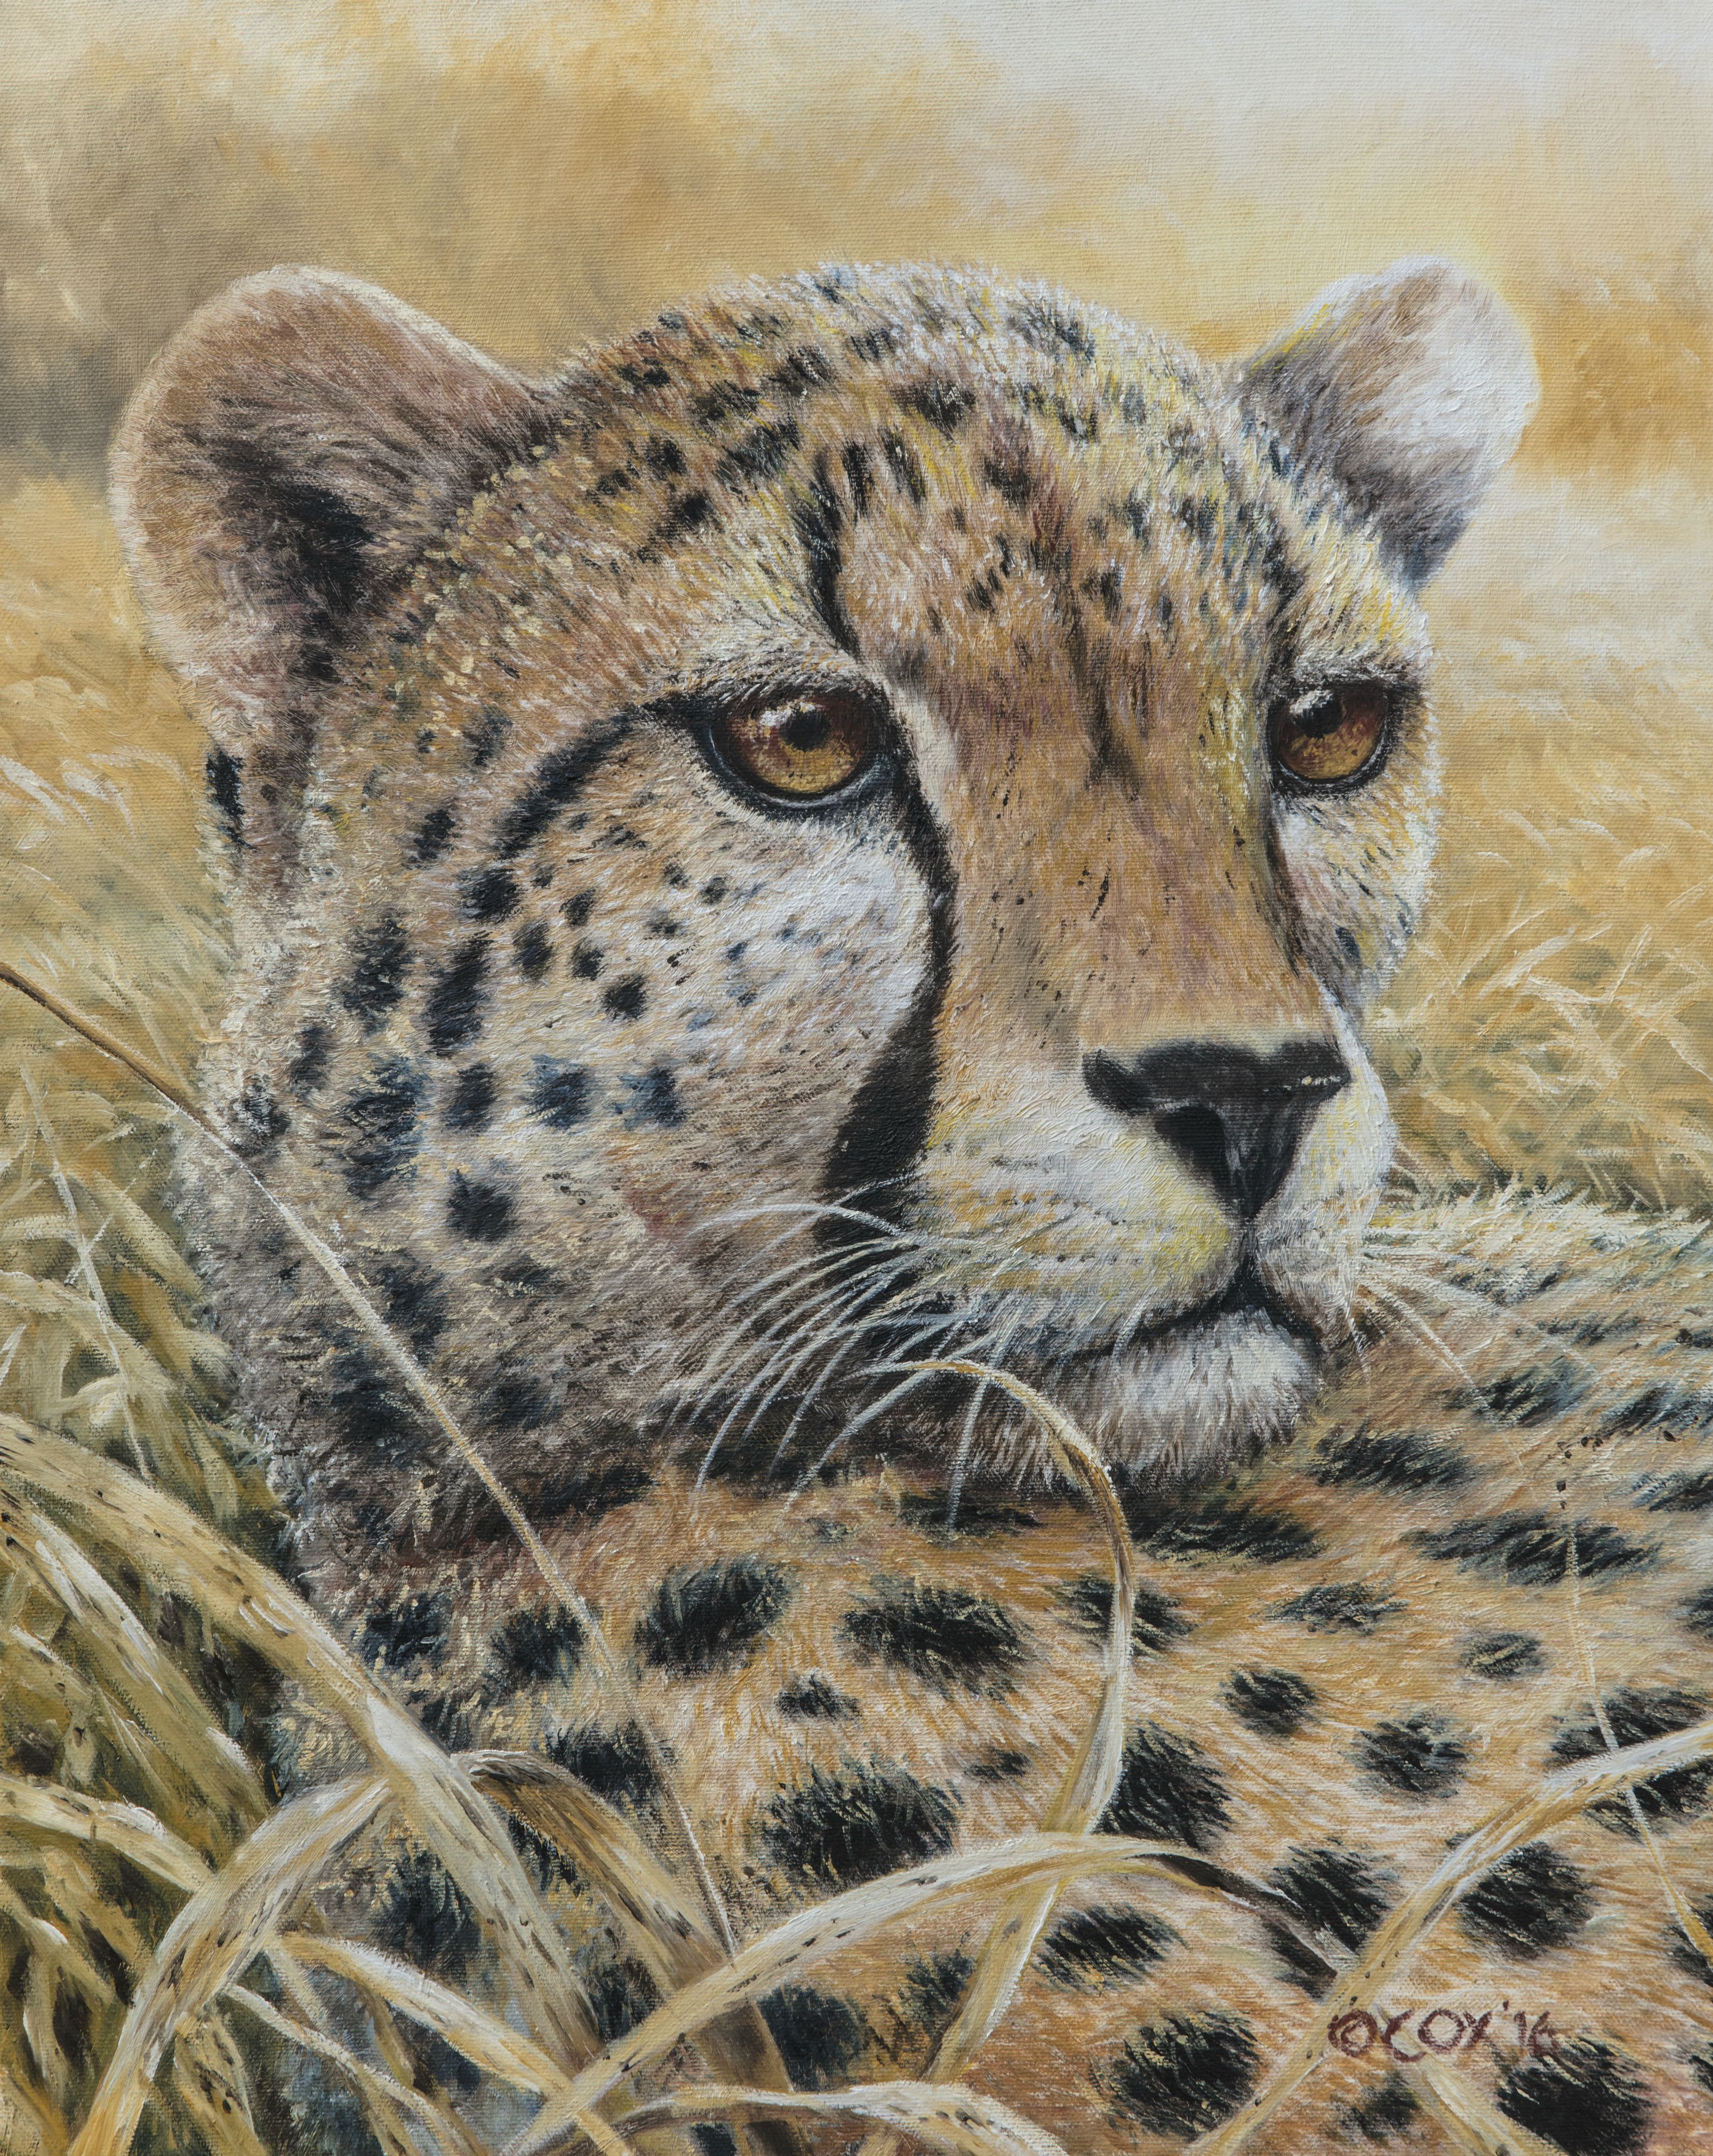 Cheetah, Oil on canvas, 20x16"